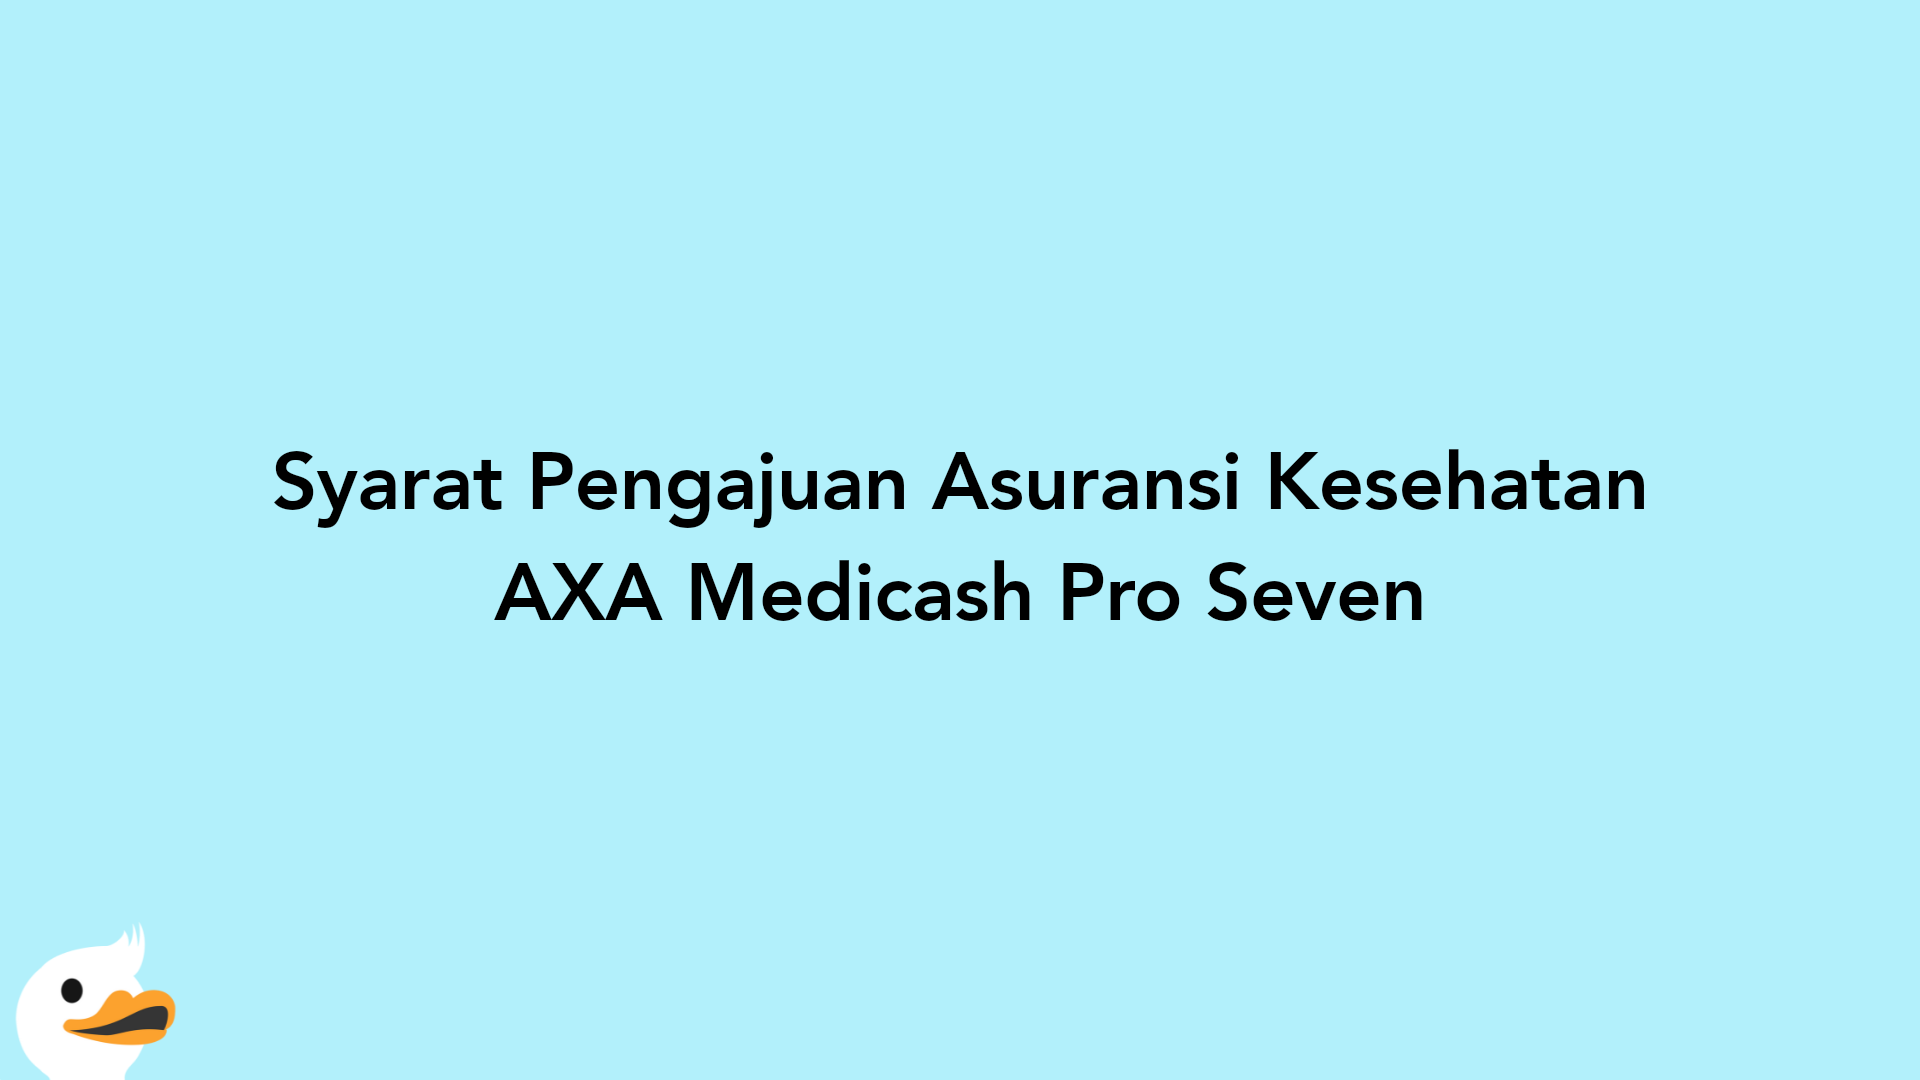 Syarat Pengajuan Asuransi Kesehatan AXA Medicash Pro Seven